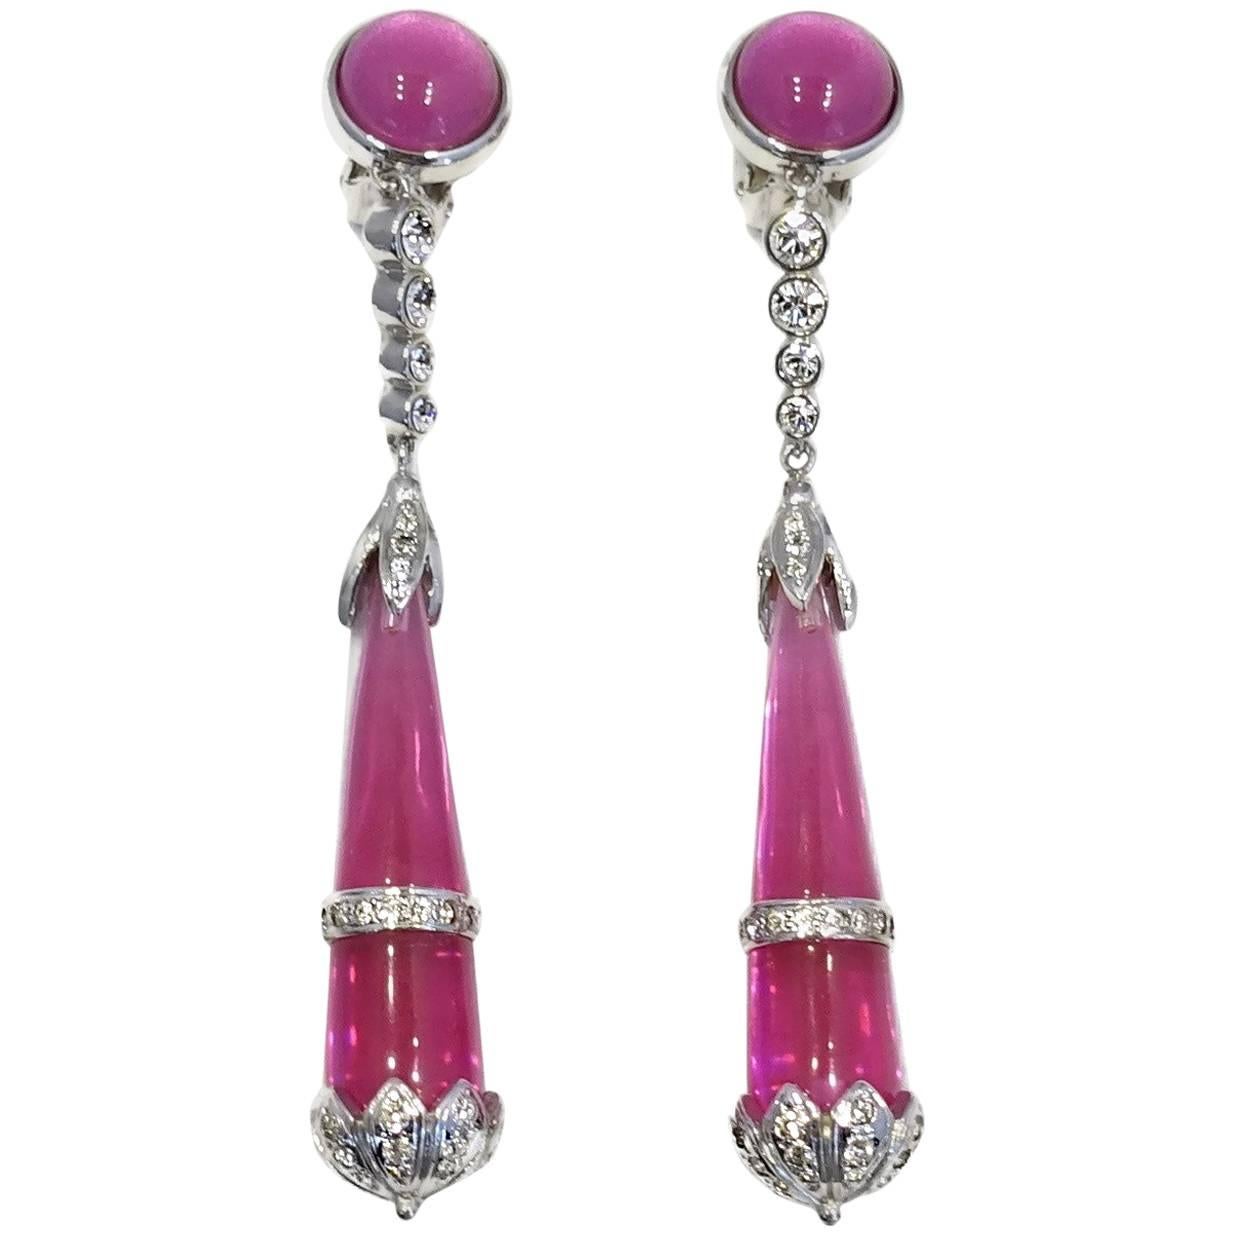 Huge 4” Hot Pink & Crystal Dangling Earrings